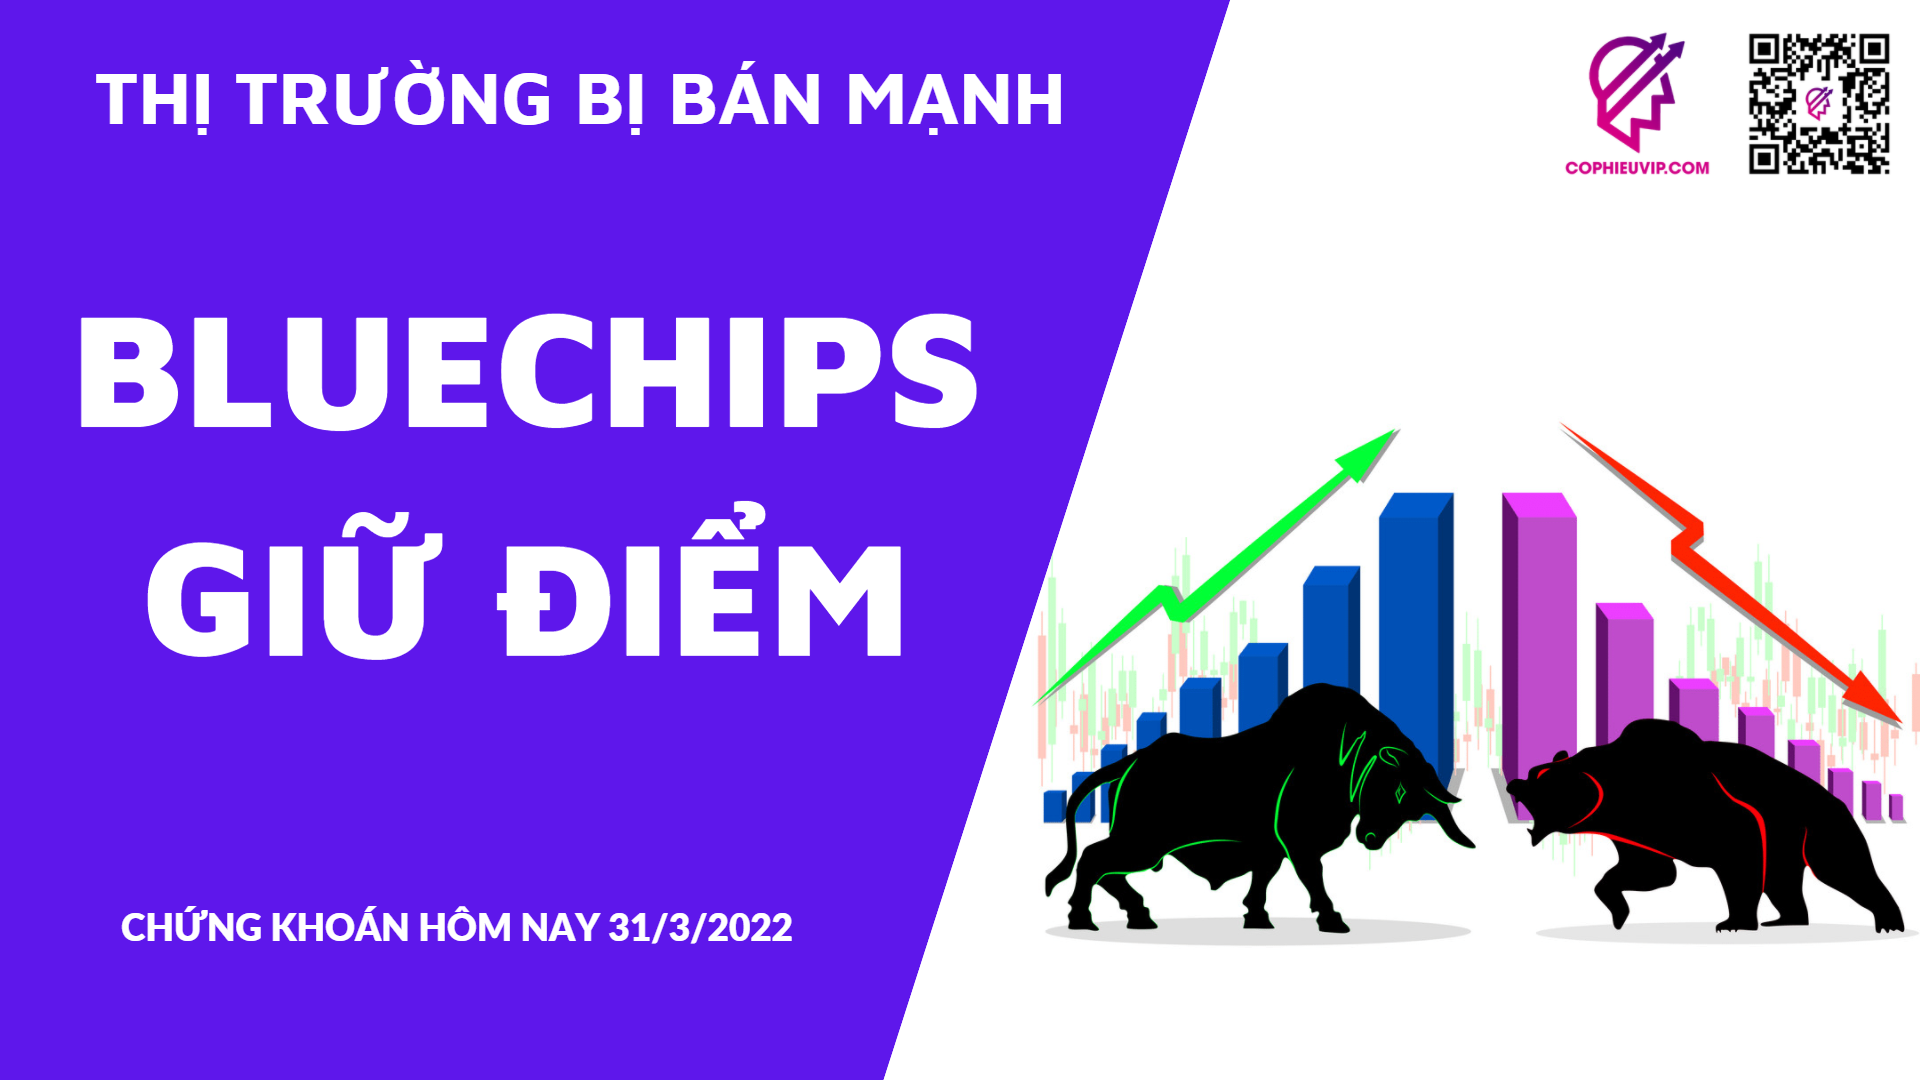 CHỨNG KHOÁN HÔM NAY 31/3/2022: Thị trường bị bán mạnh - Bluechips giữ điểm